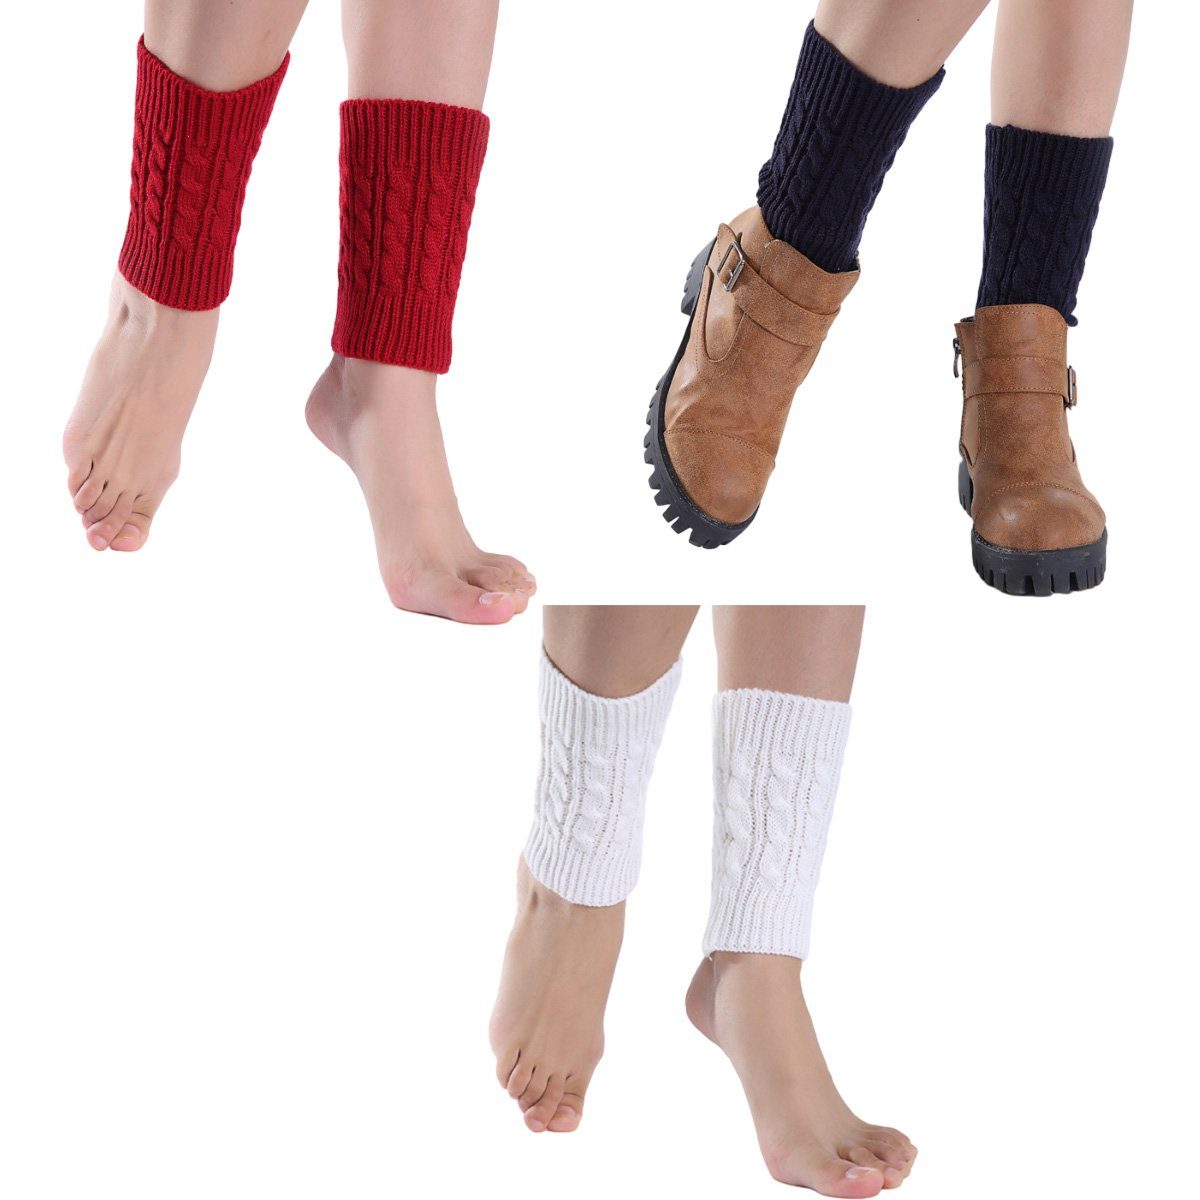 Jormftte Beinstulpen gestrickte Stiefel kurz Winter Beinstulpen Manschetten für Frauen Rot Weiß marineblau